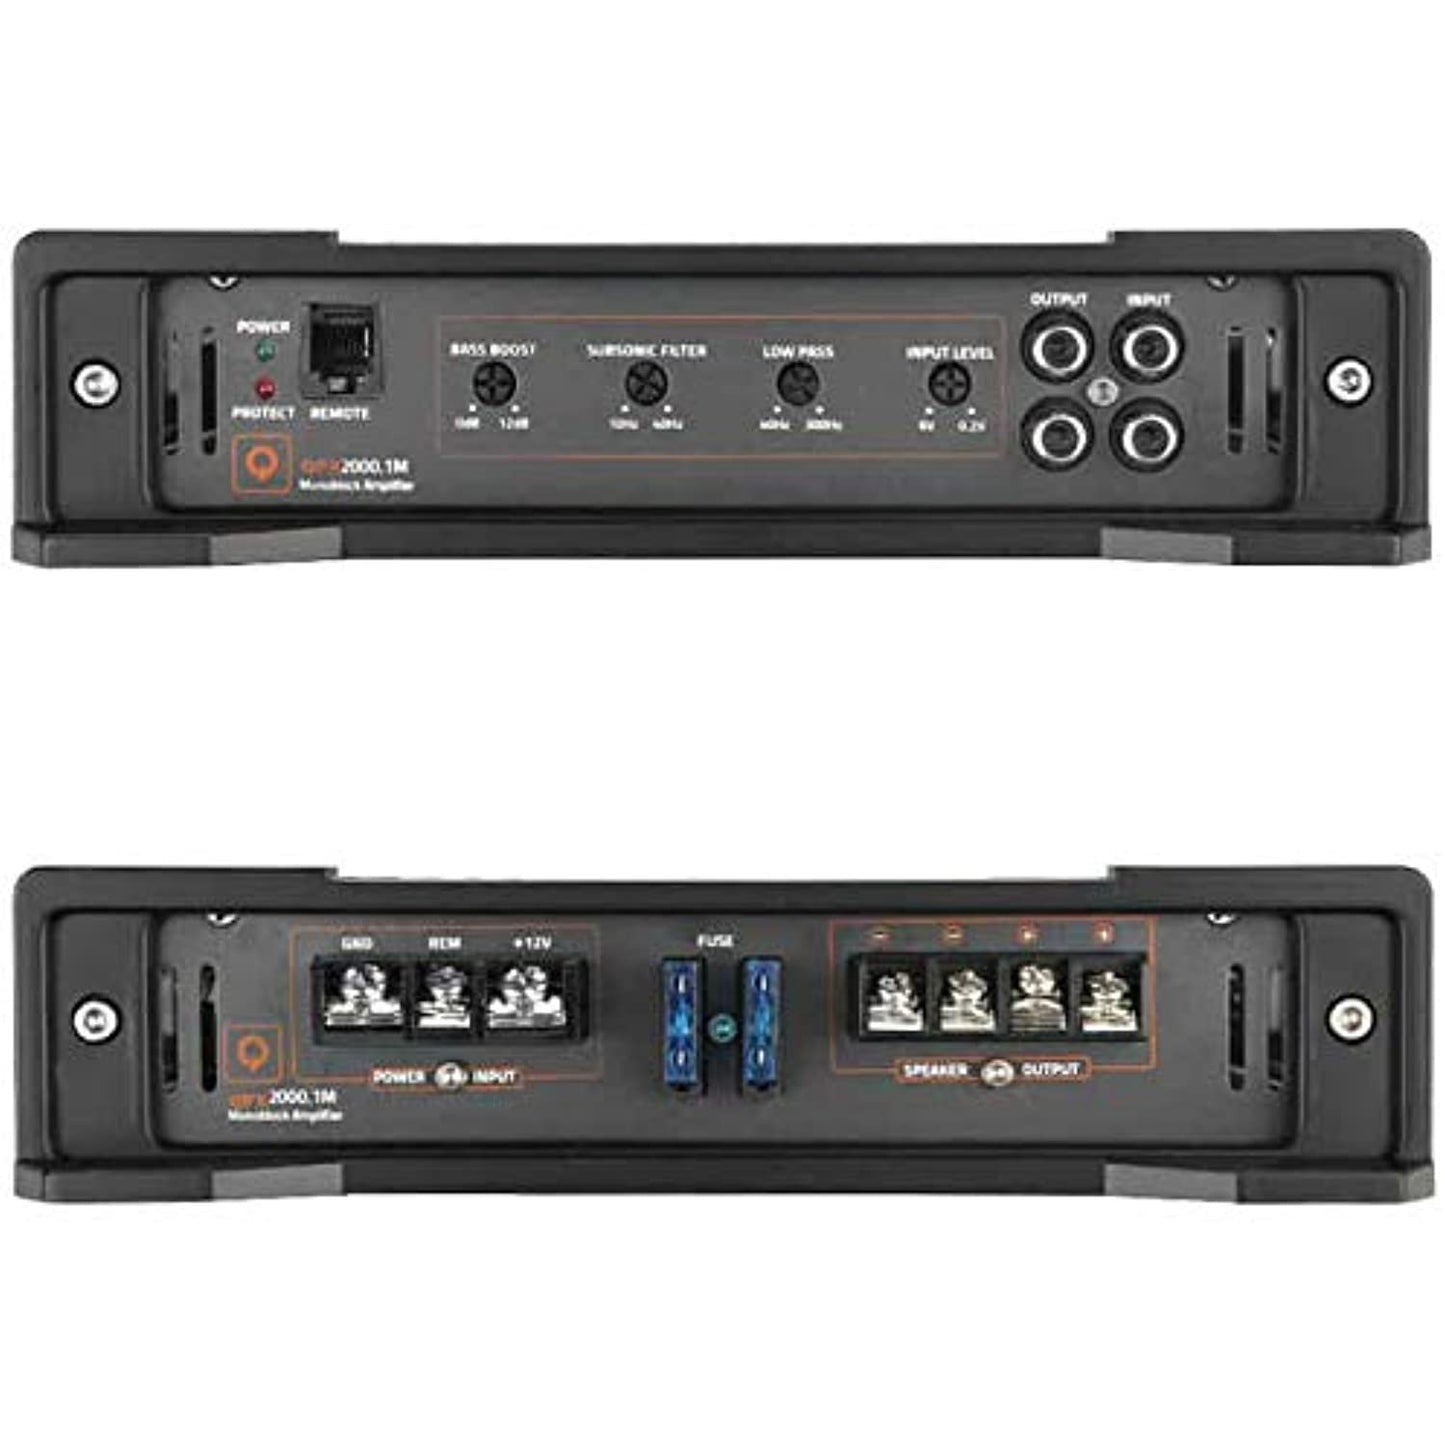 Quantum Audio QPX2000.1M 2000W Max Class-D MonoBlock Car Subwoofer Amplifier Amp w/Remote Bass Control